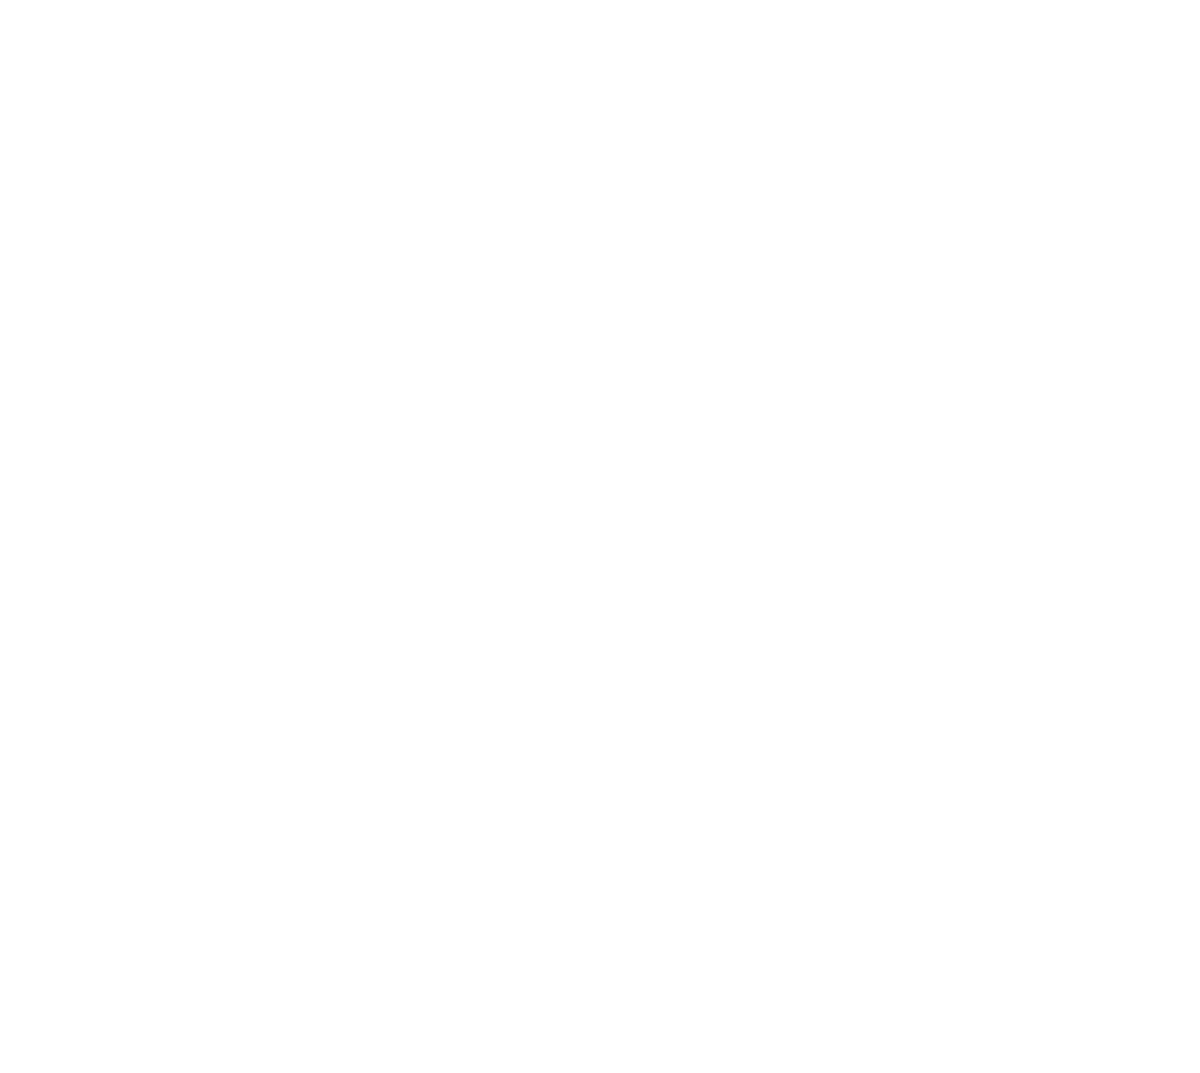 dx beyondthedash logo white png